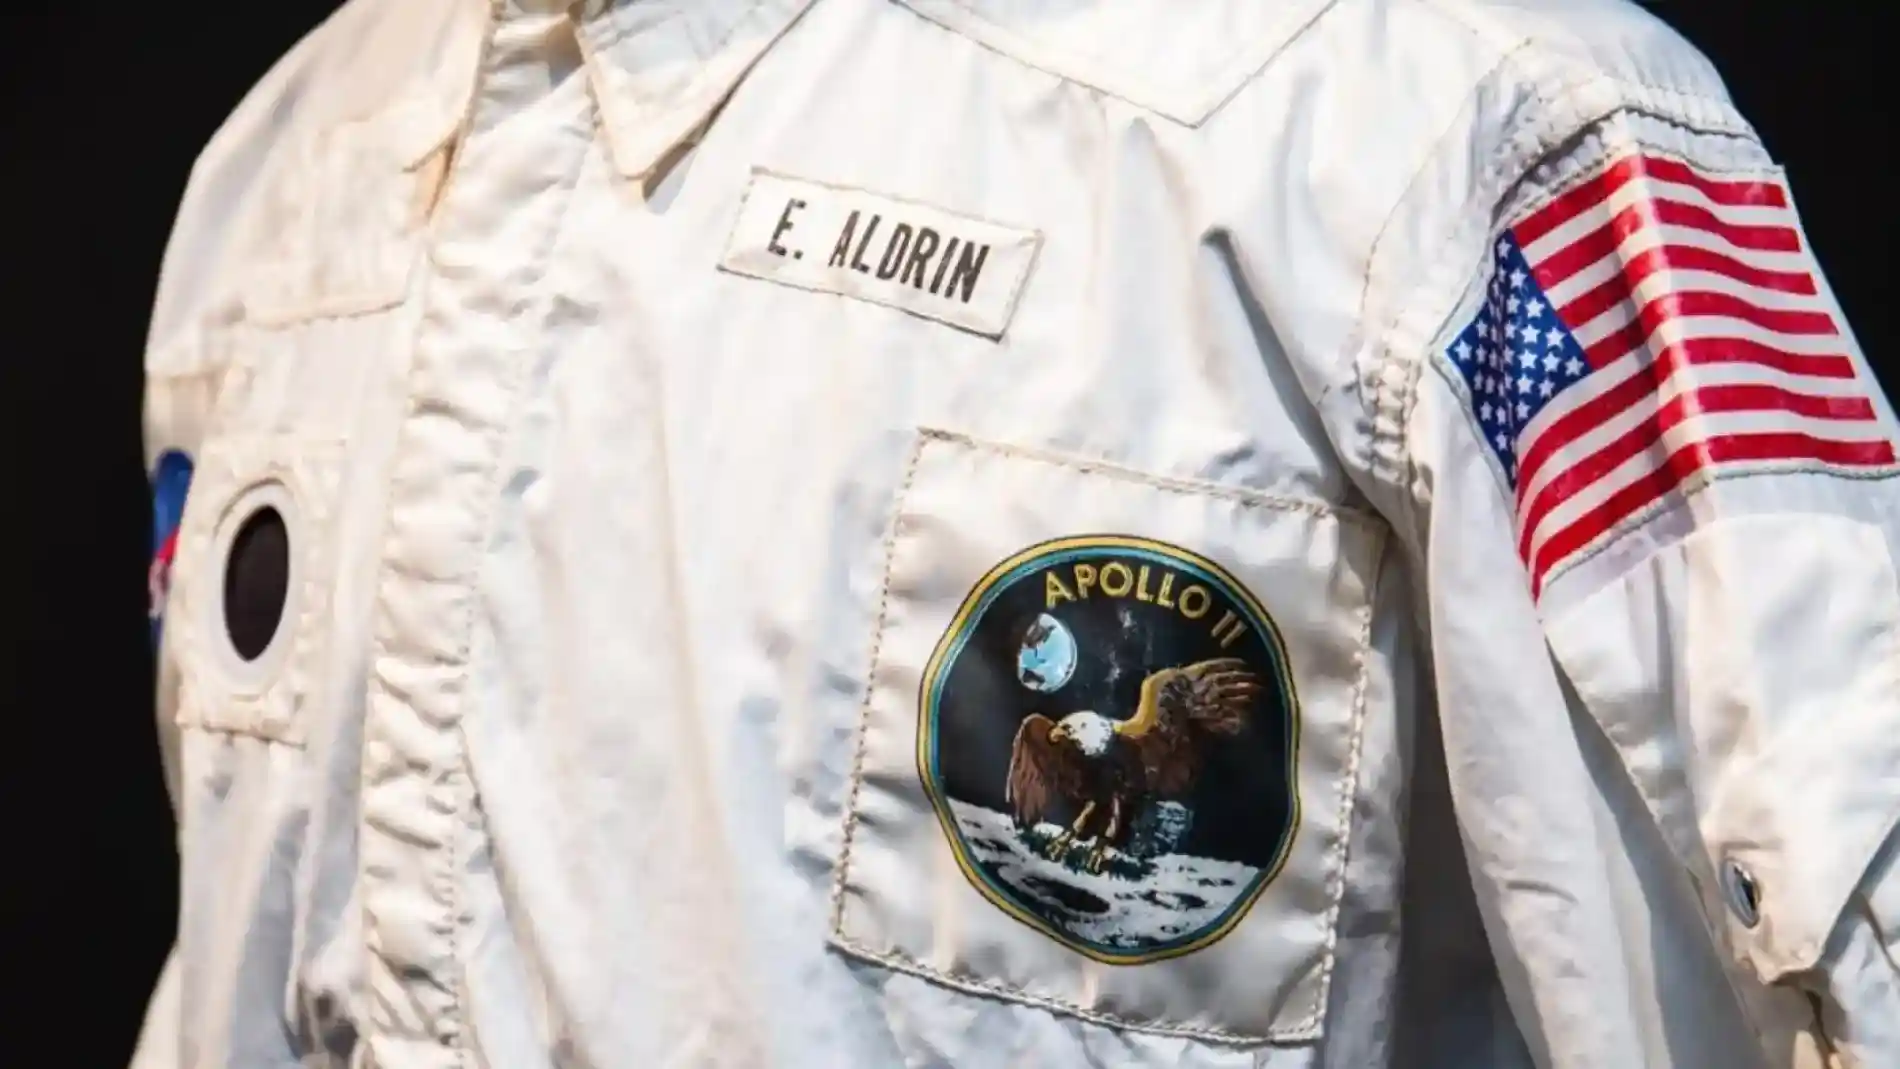 Chaqueta original de Edwin "Buzz" Aldrin.